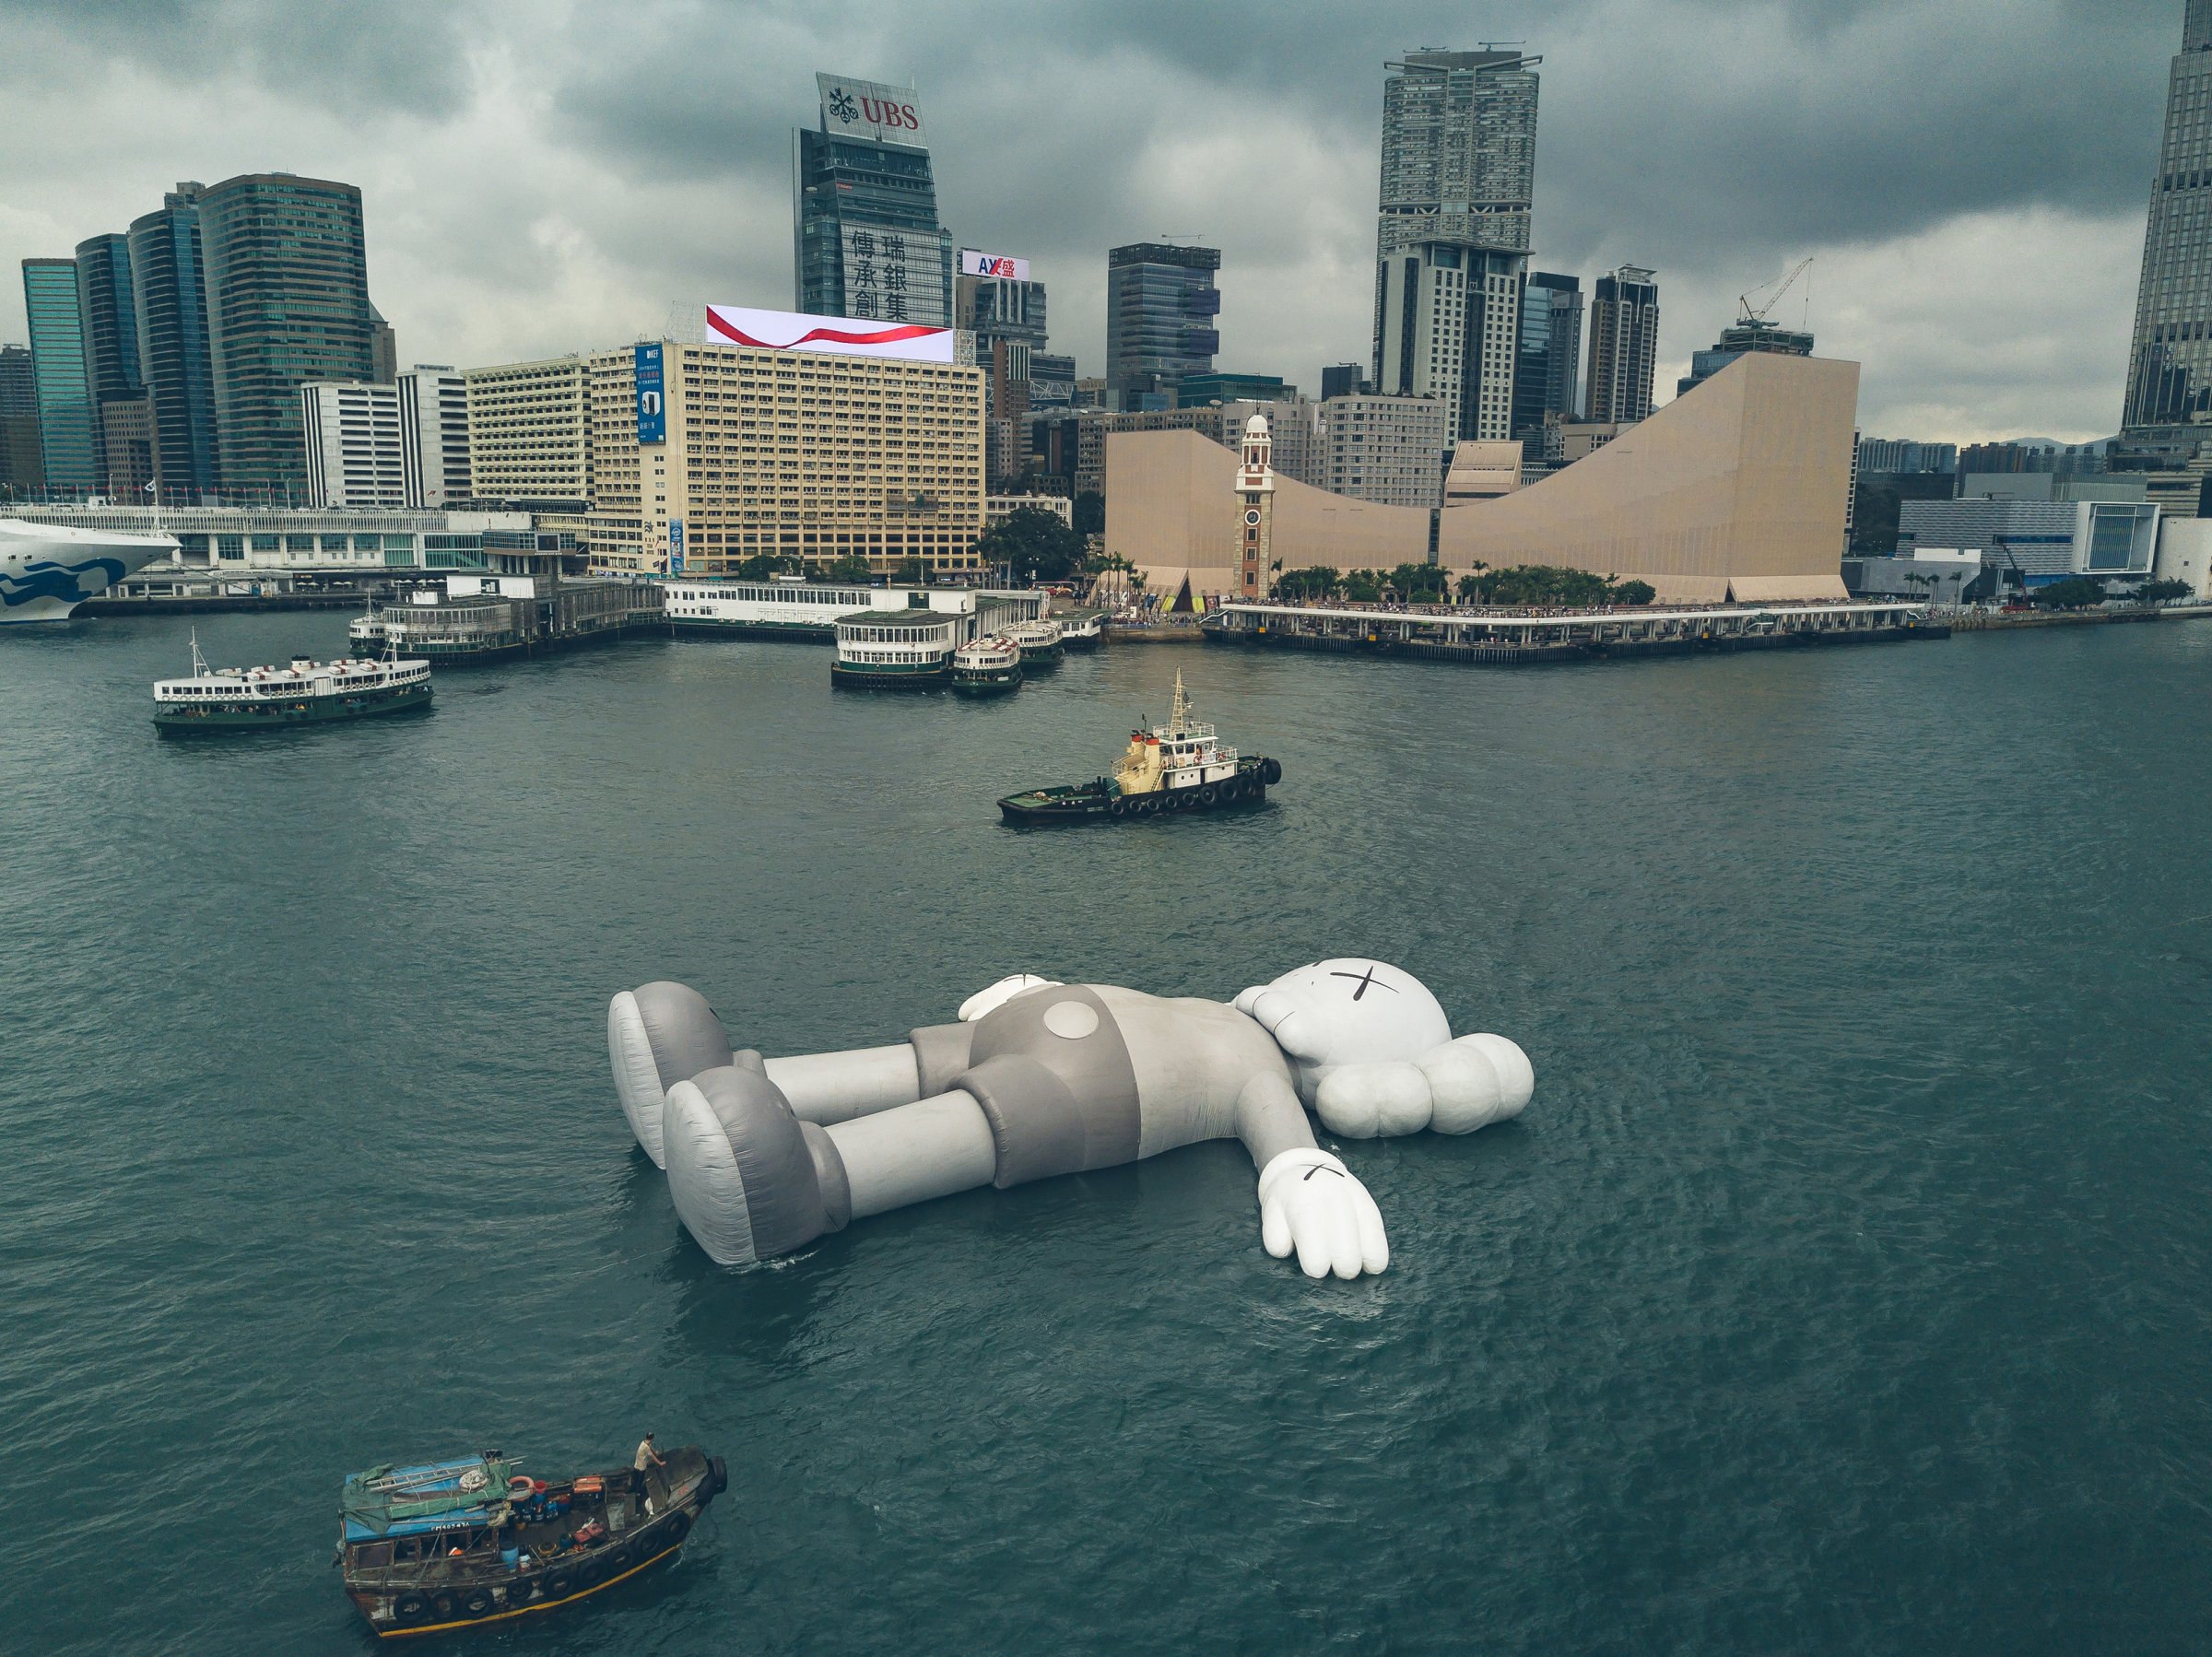 KAWS' Floating Installation in Hong Kong Harbor